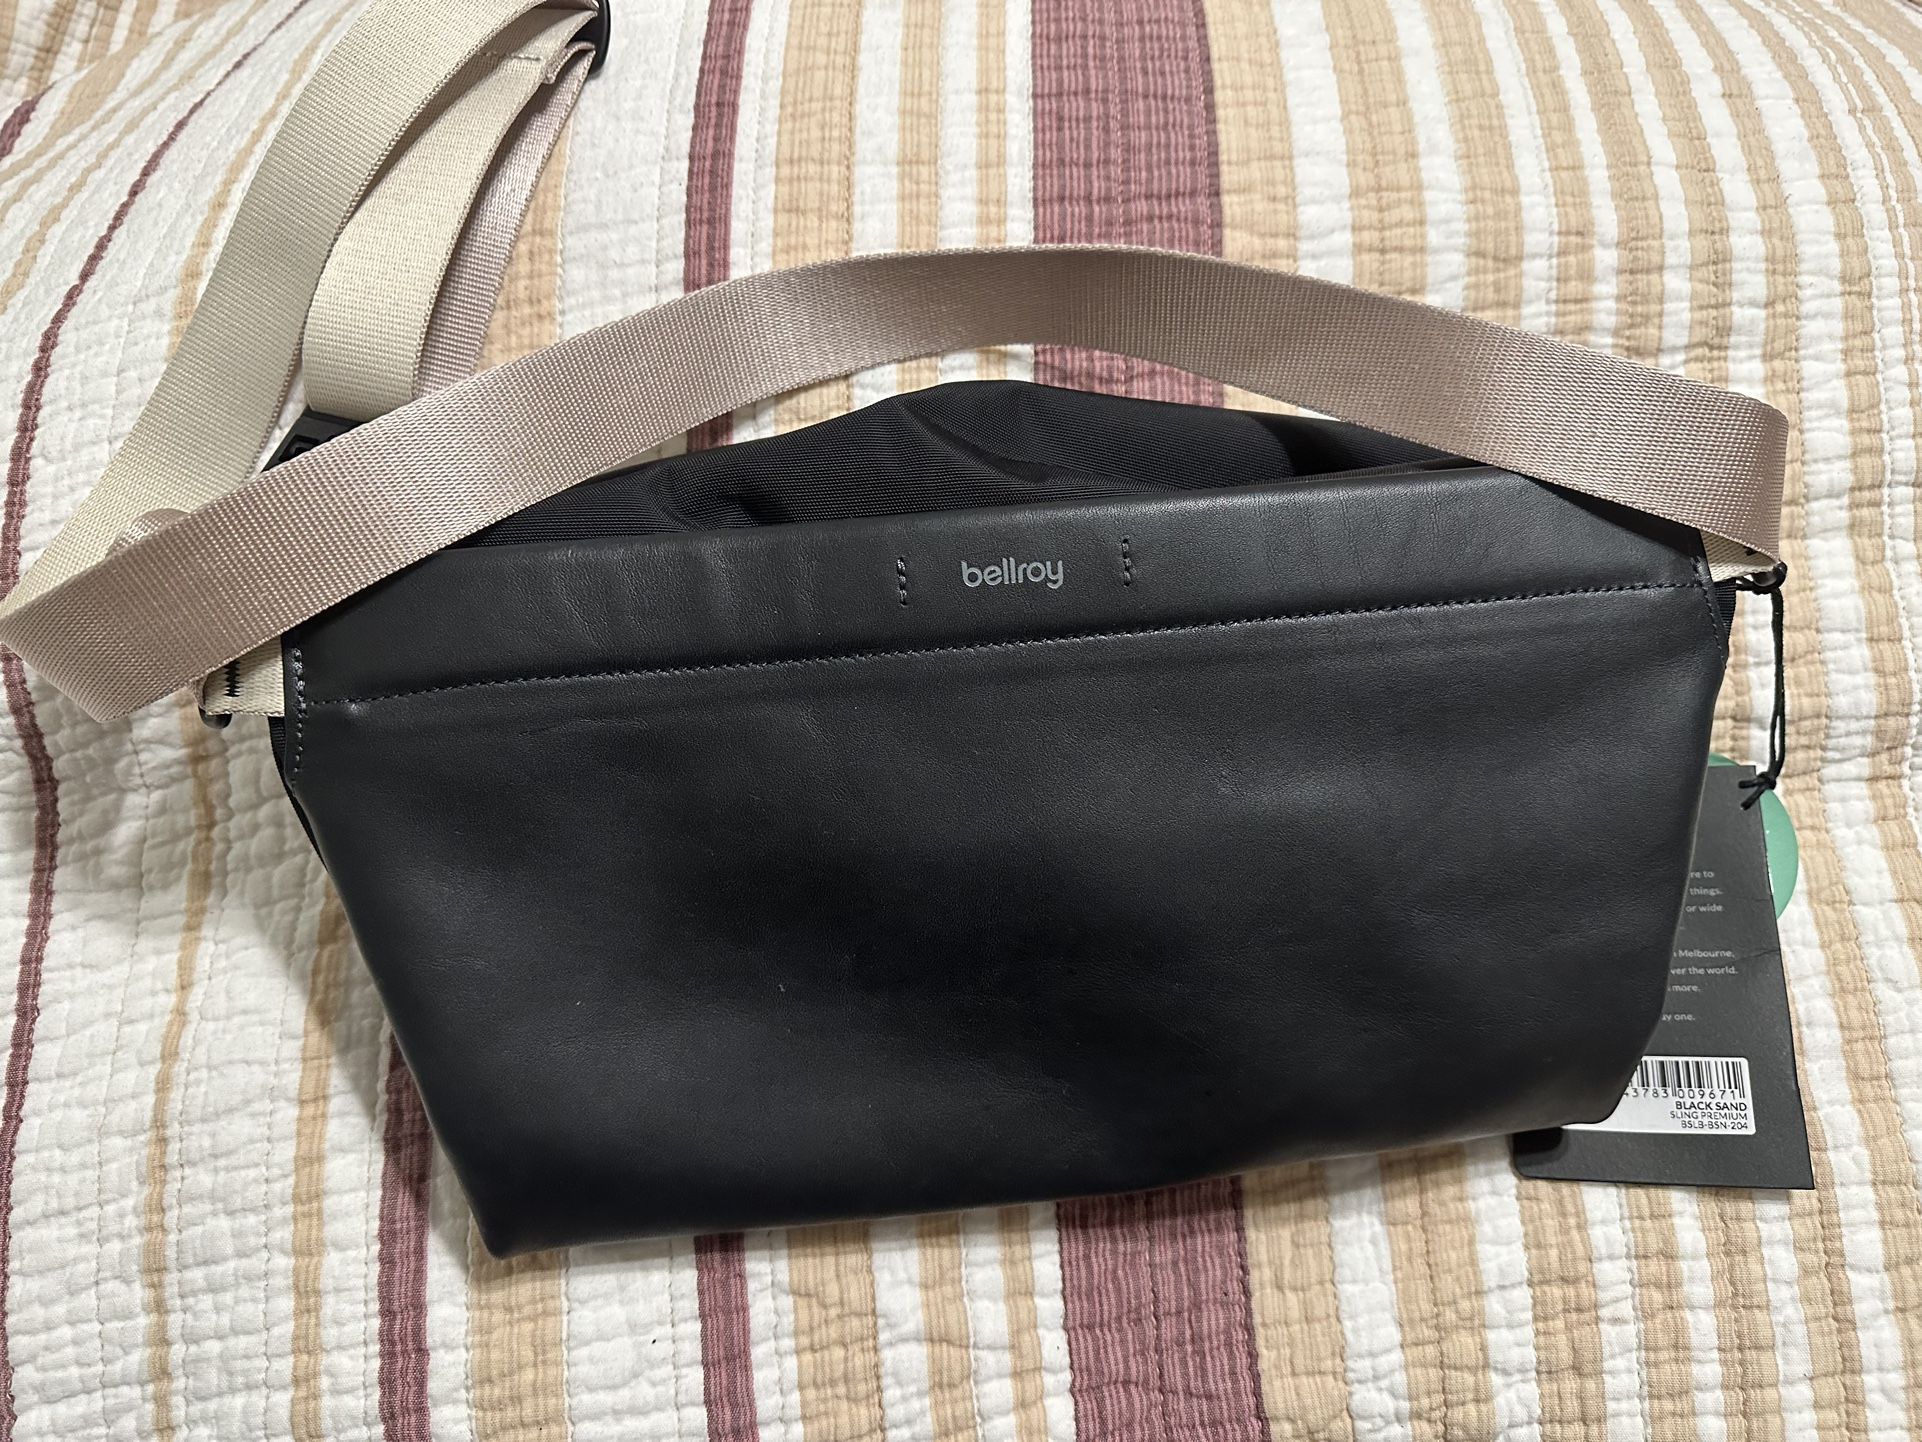 Bellroy Sling Bag - Premium (Leather Crossbody Bag For Men, Women, 7L)